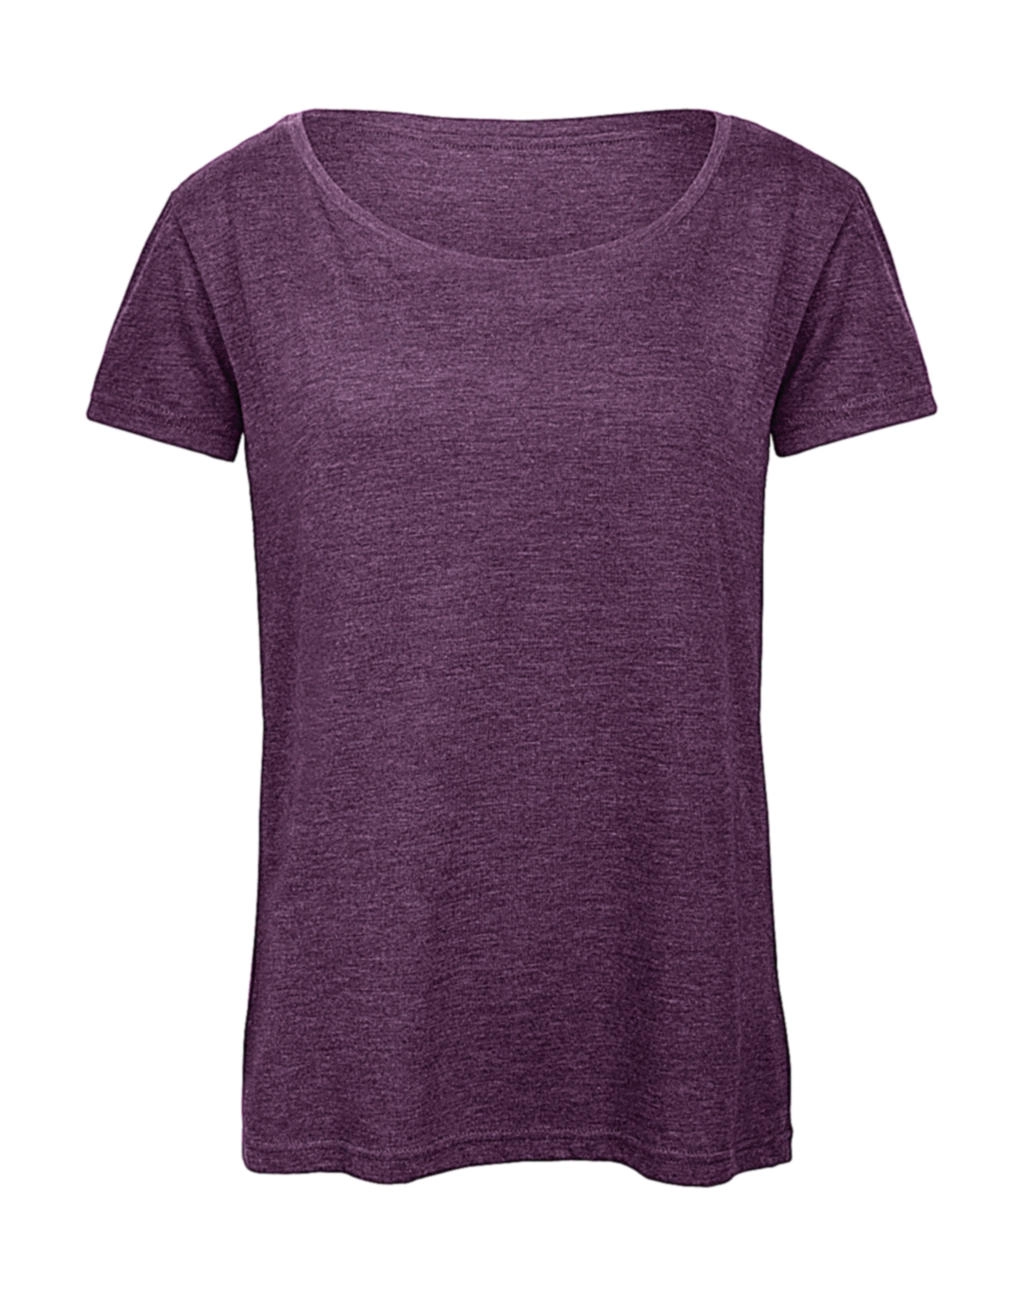 Triblend/women T-Shirt zum Besticken und Bedrucken in der Farbe Heather Purple mit Ihren Logo, Schriftzug oder Motiv.